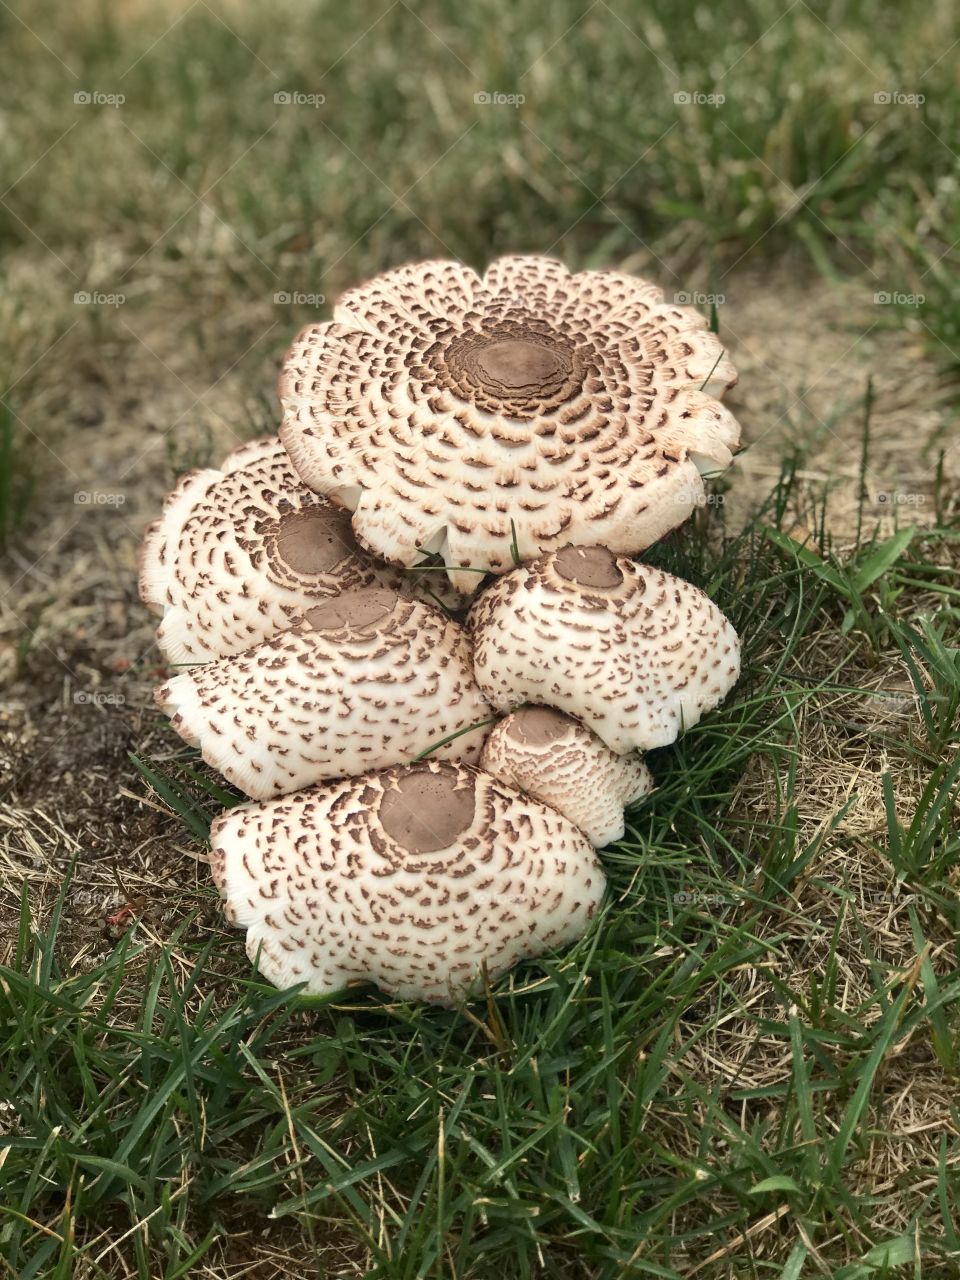 Flat Mushrooms 